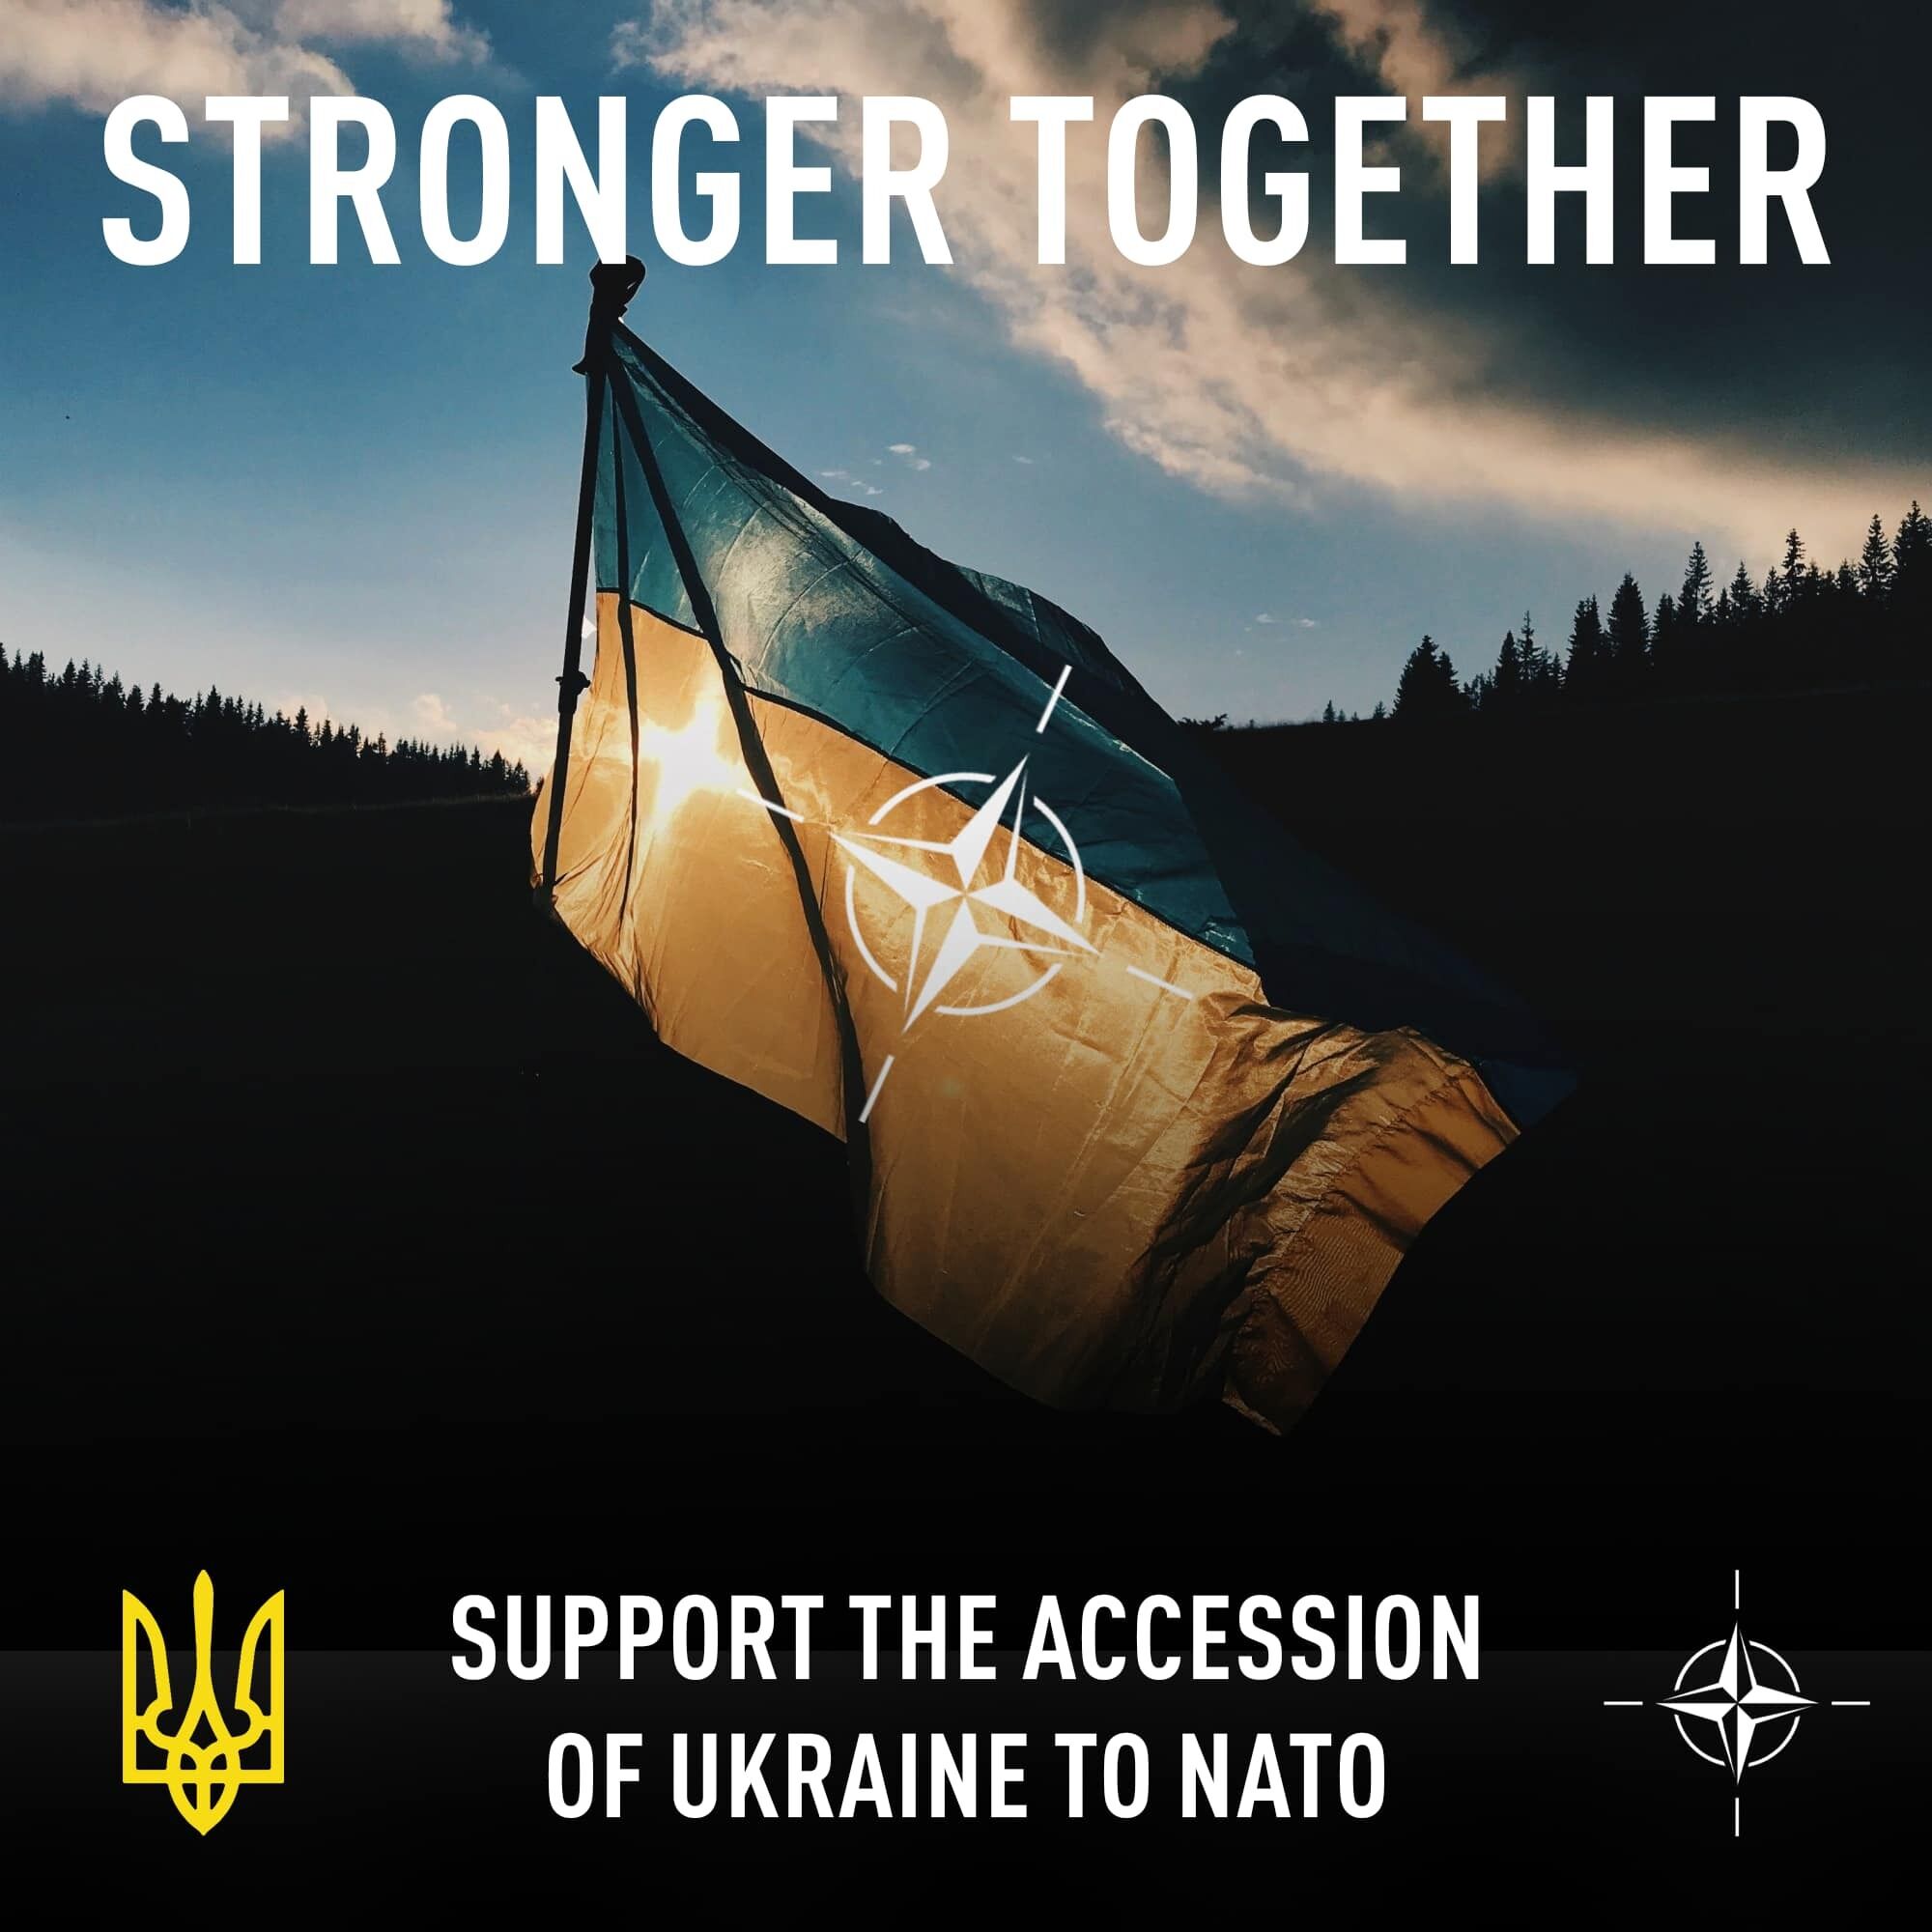 Інформаційна кампанія підтримки вступу України до НАТО